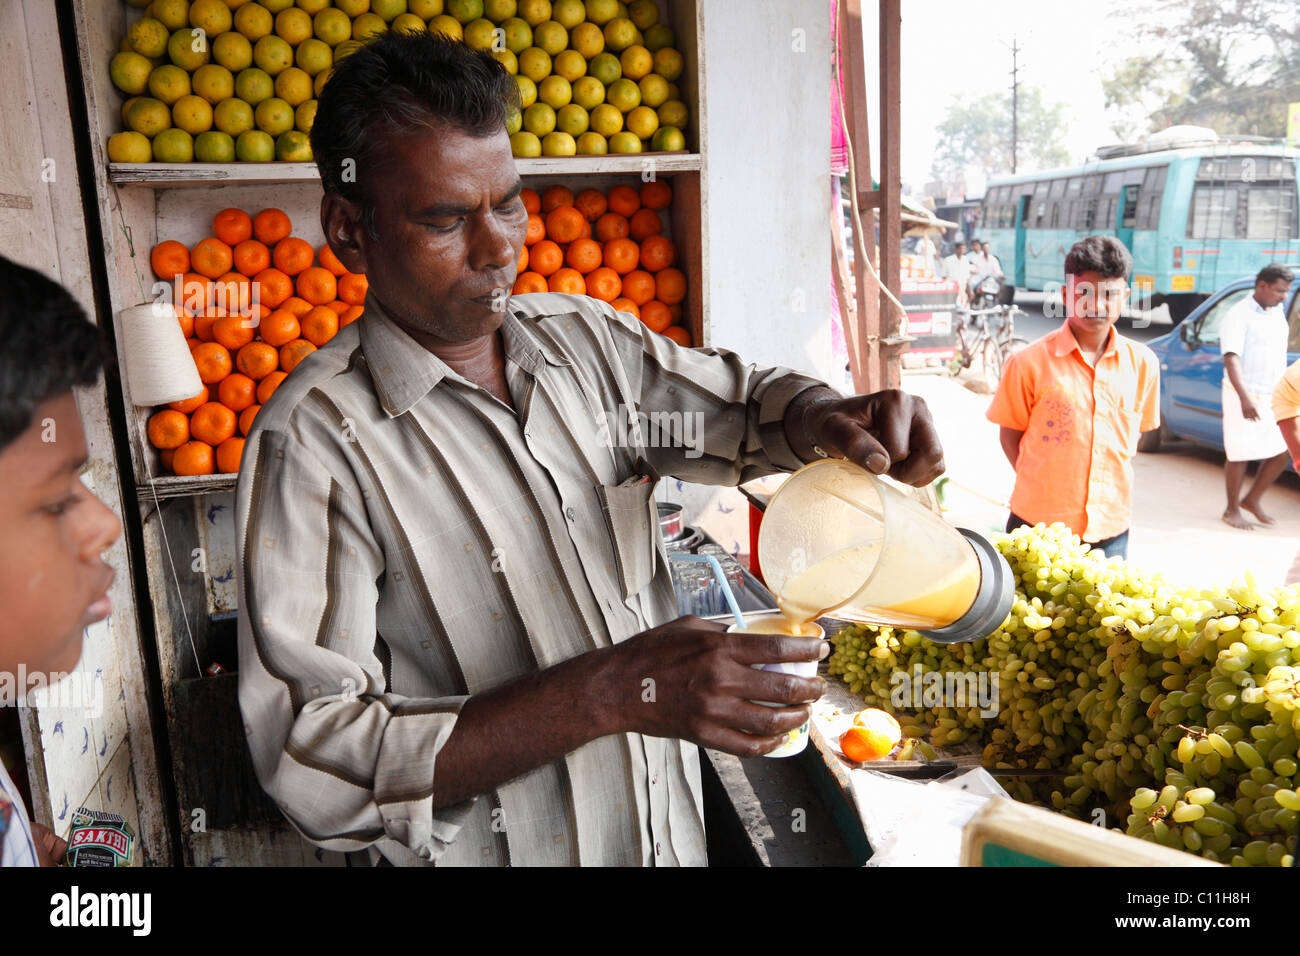 Obst Verkäufer Gießen frisch gepressten Orangensaft in Tasse, Punjaipuliampatti, Tamil Nadu, Tamil Nadu, Südindien, Indien, Südasien, Asien Stockfoto